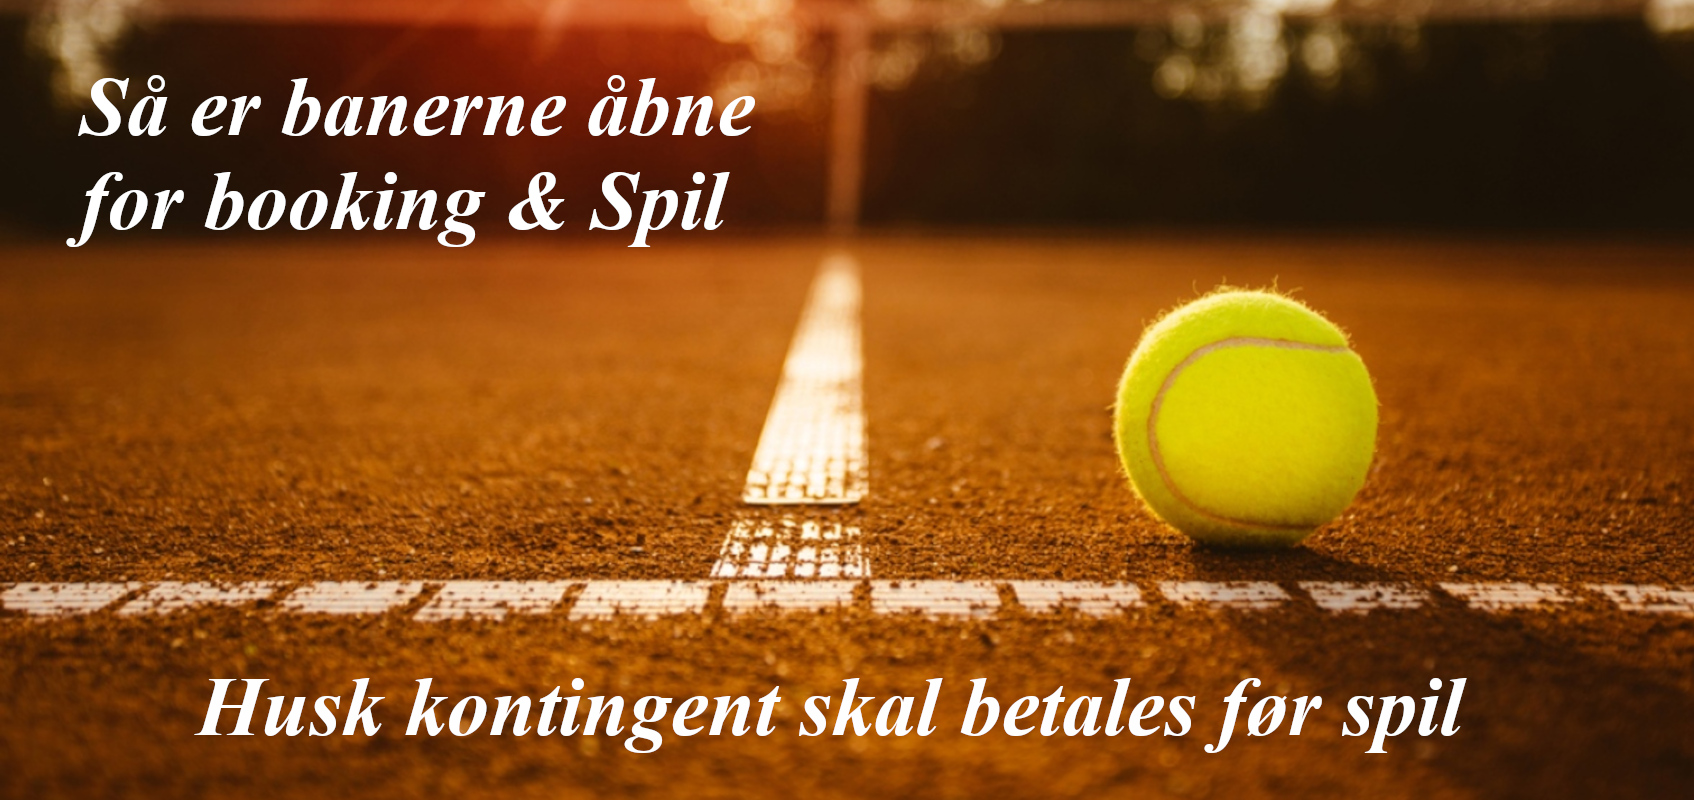 tennis-clay-court-1700-800-med-tekst-ny